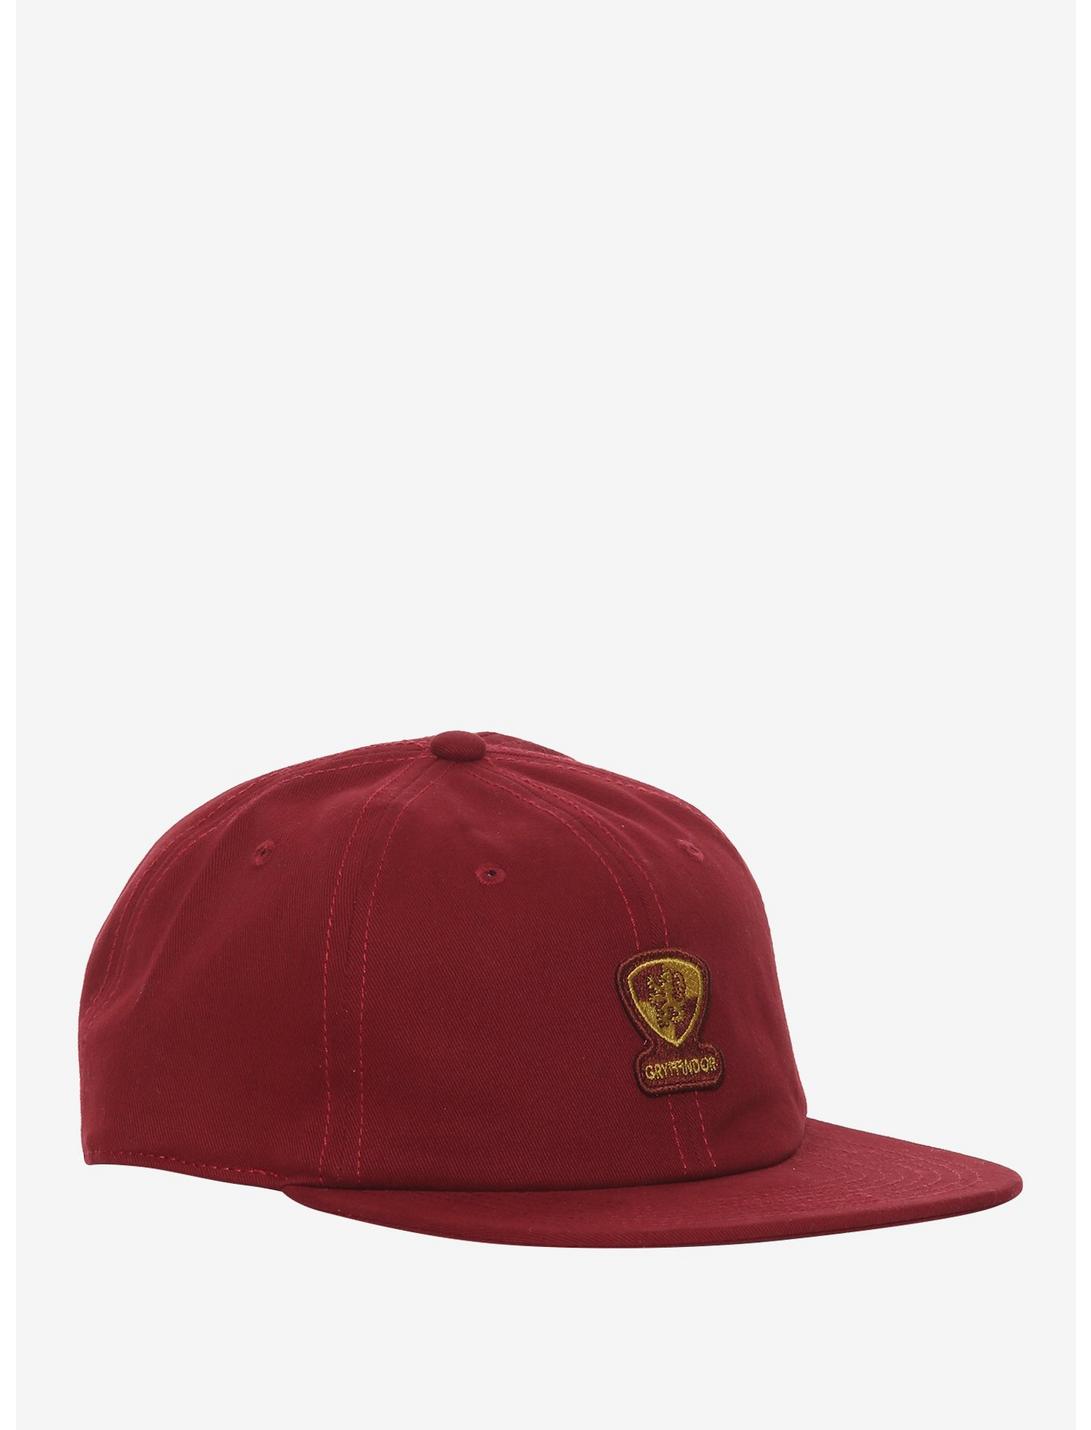 Harry Potter Gryffindor Crest Snapback Hat, , hi-res